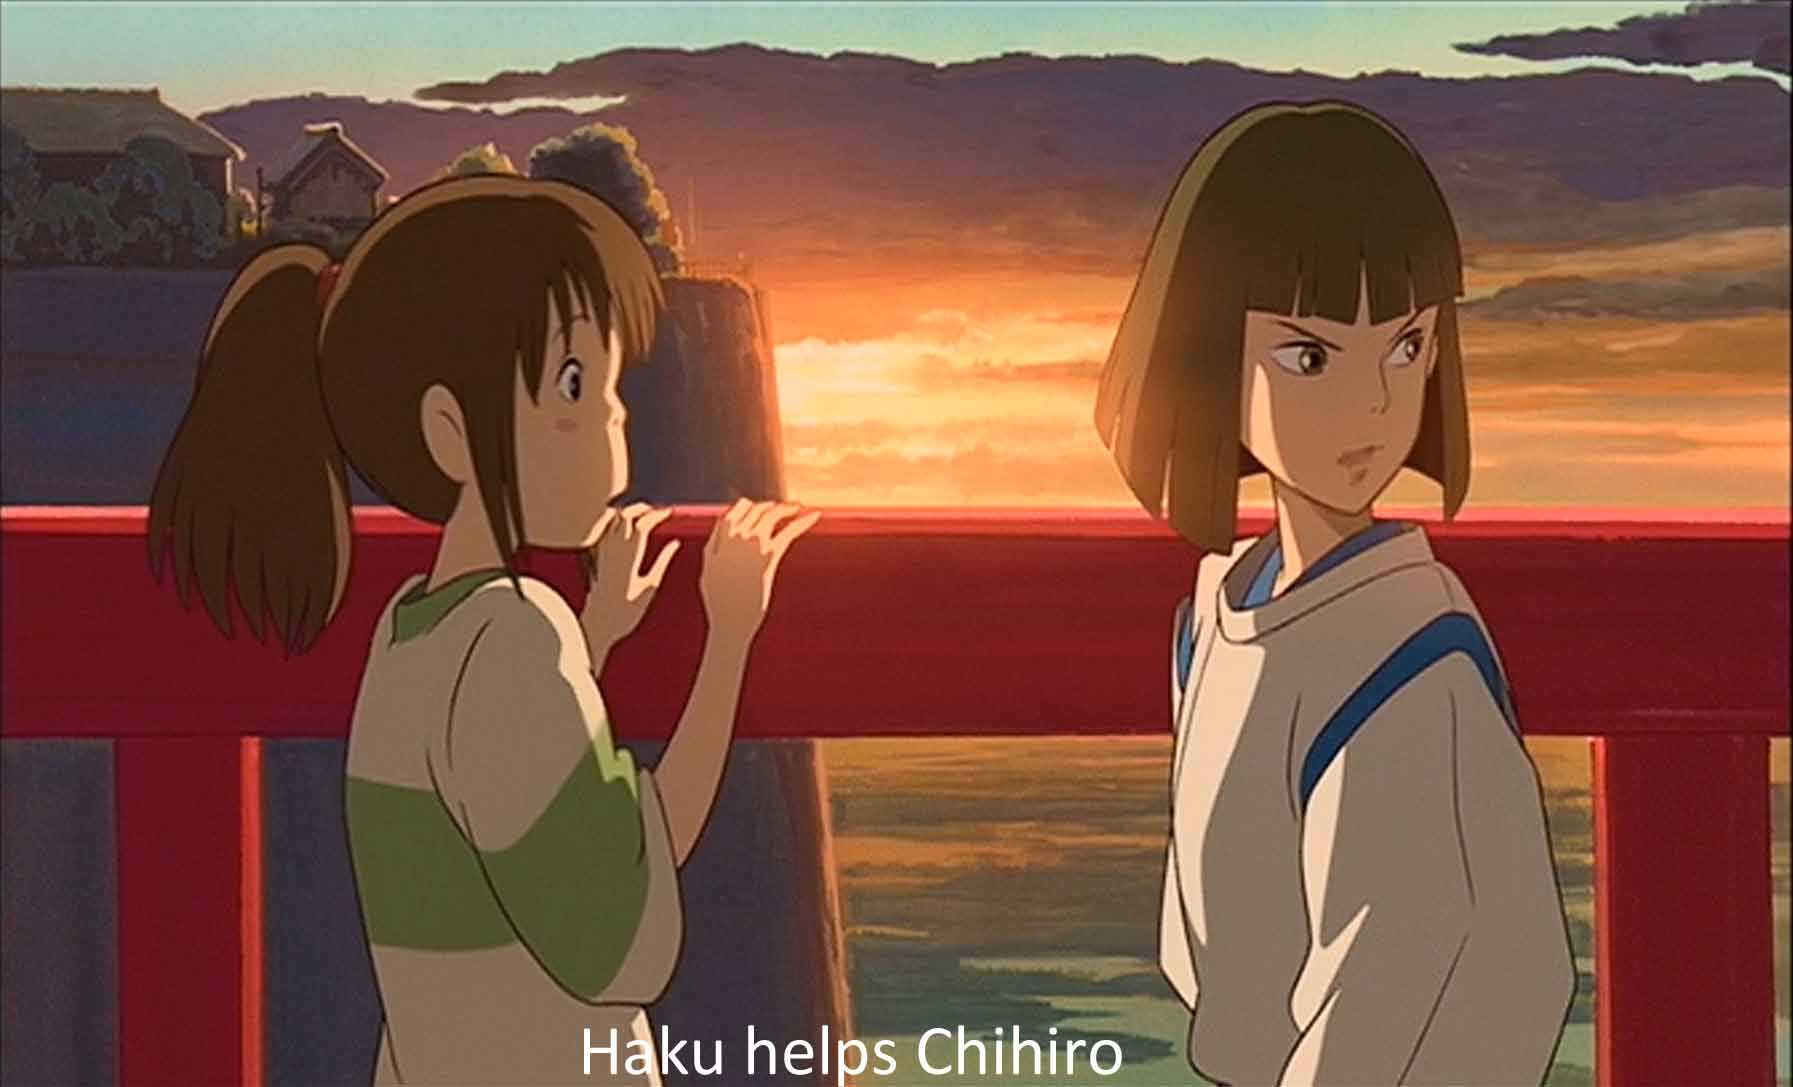 Haku helps Chihiro